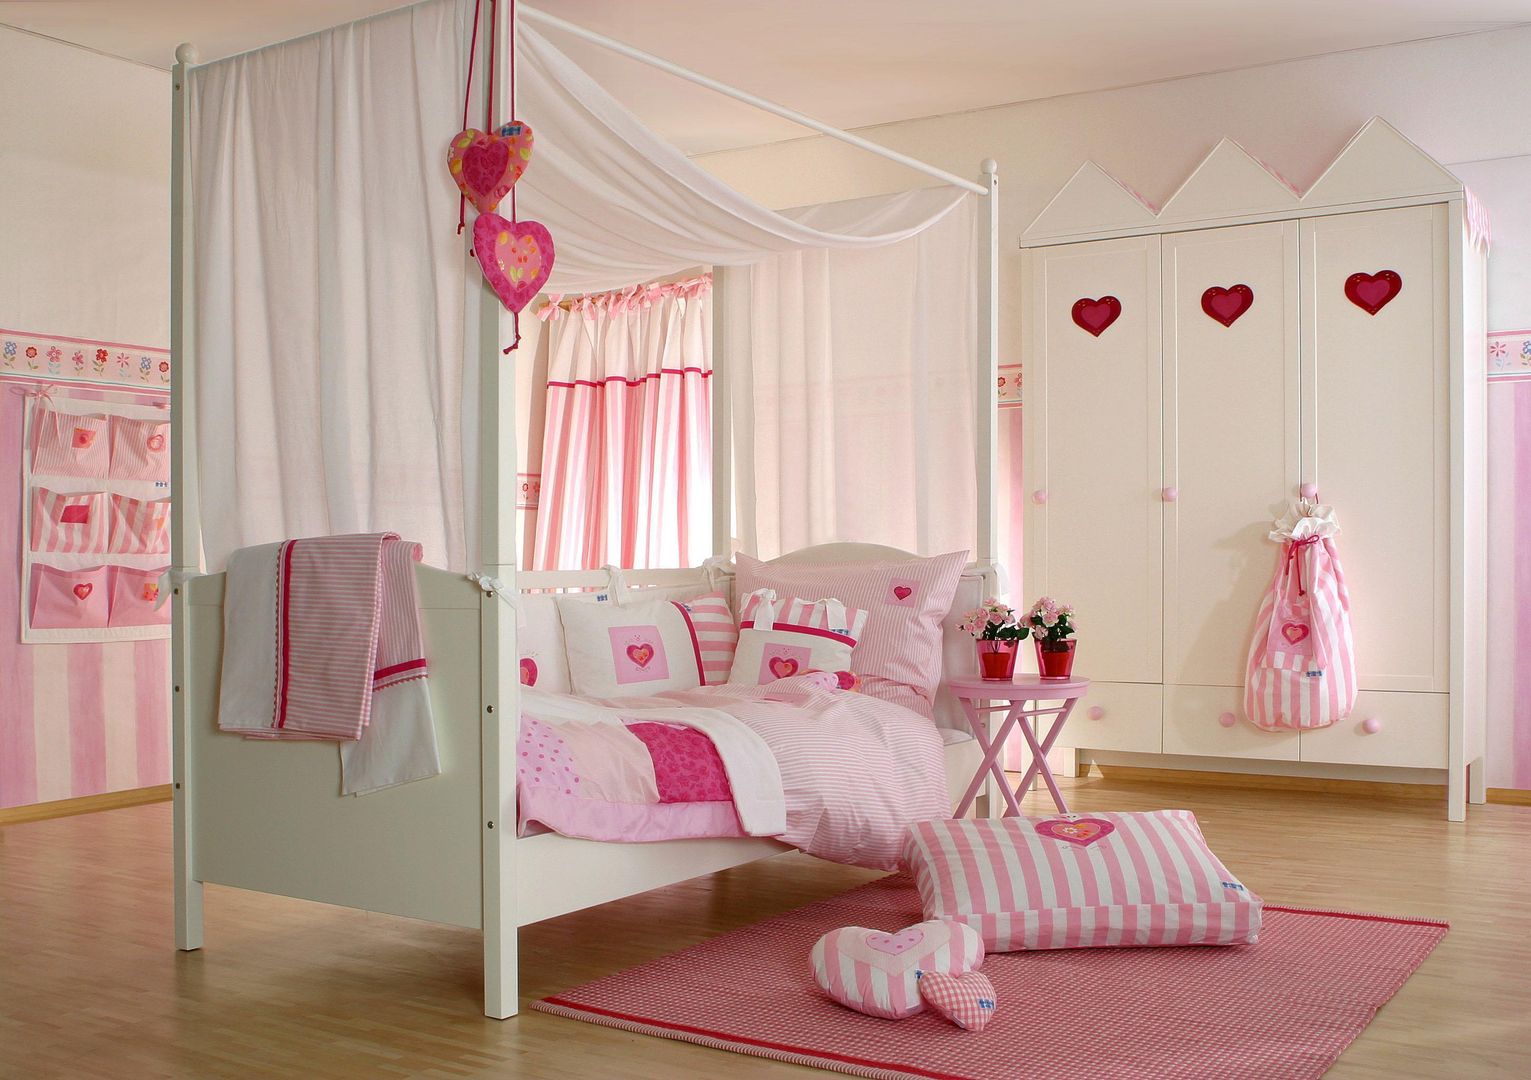 Bed Veil Heaven The Baby Cot Shop, Chelsea Habitaciones para niños de estilo clásico Camas y cunas